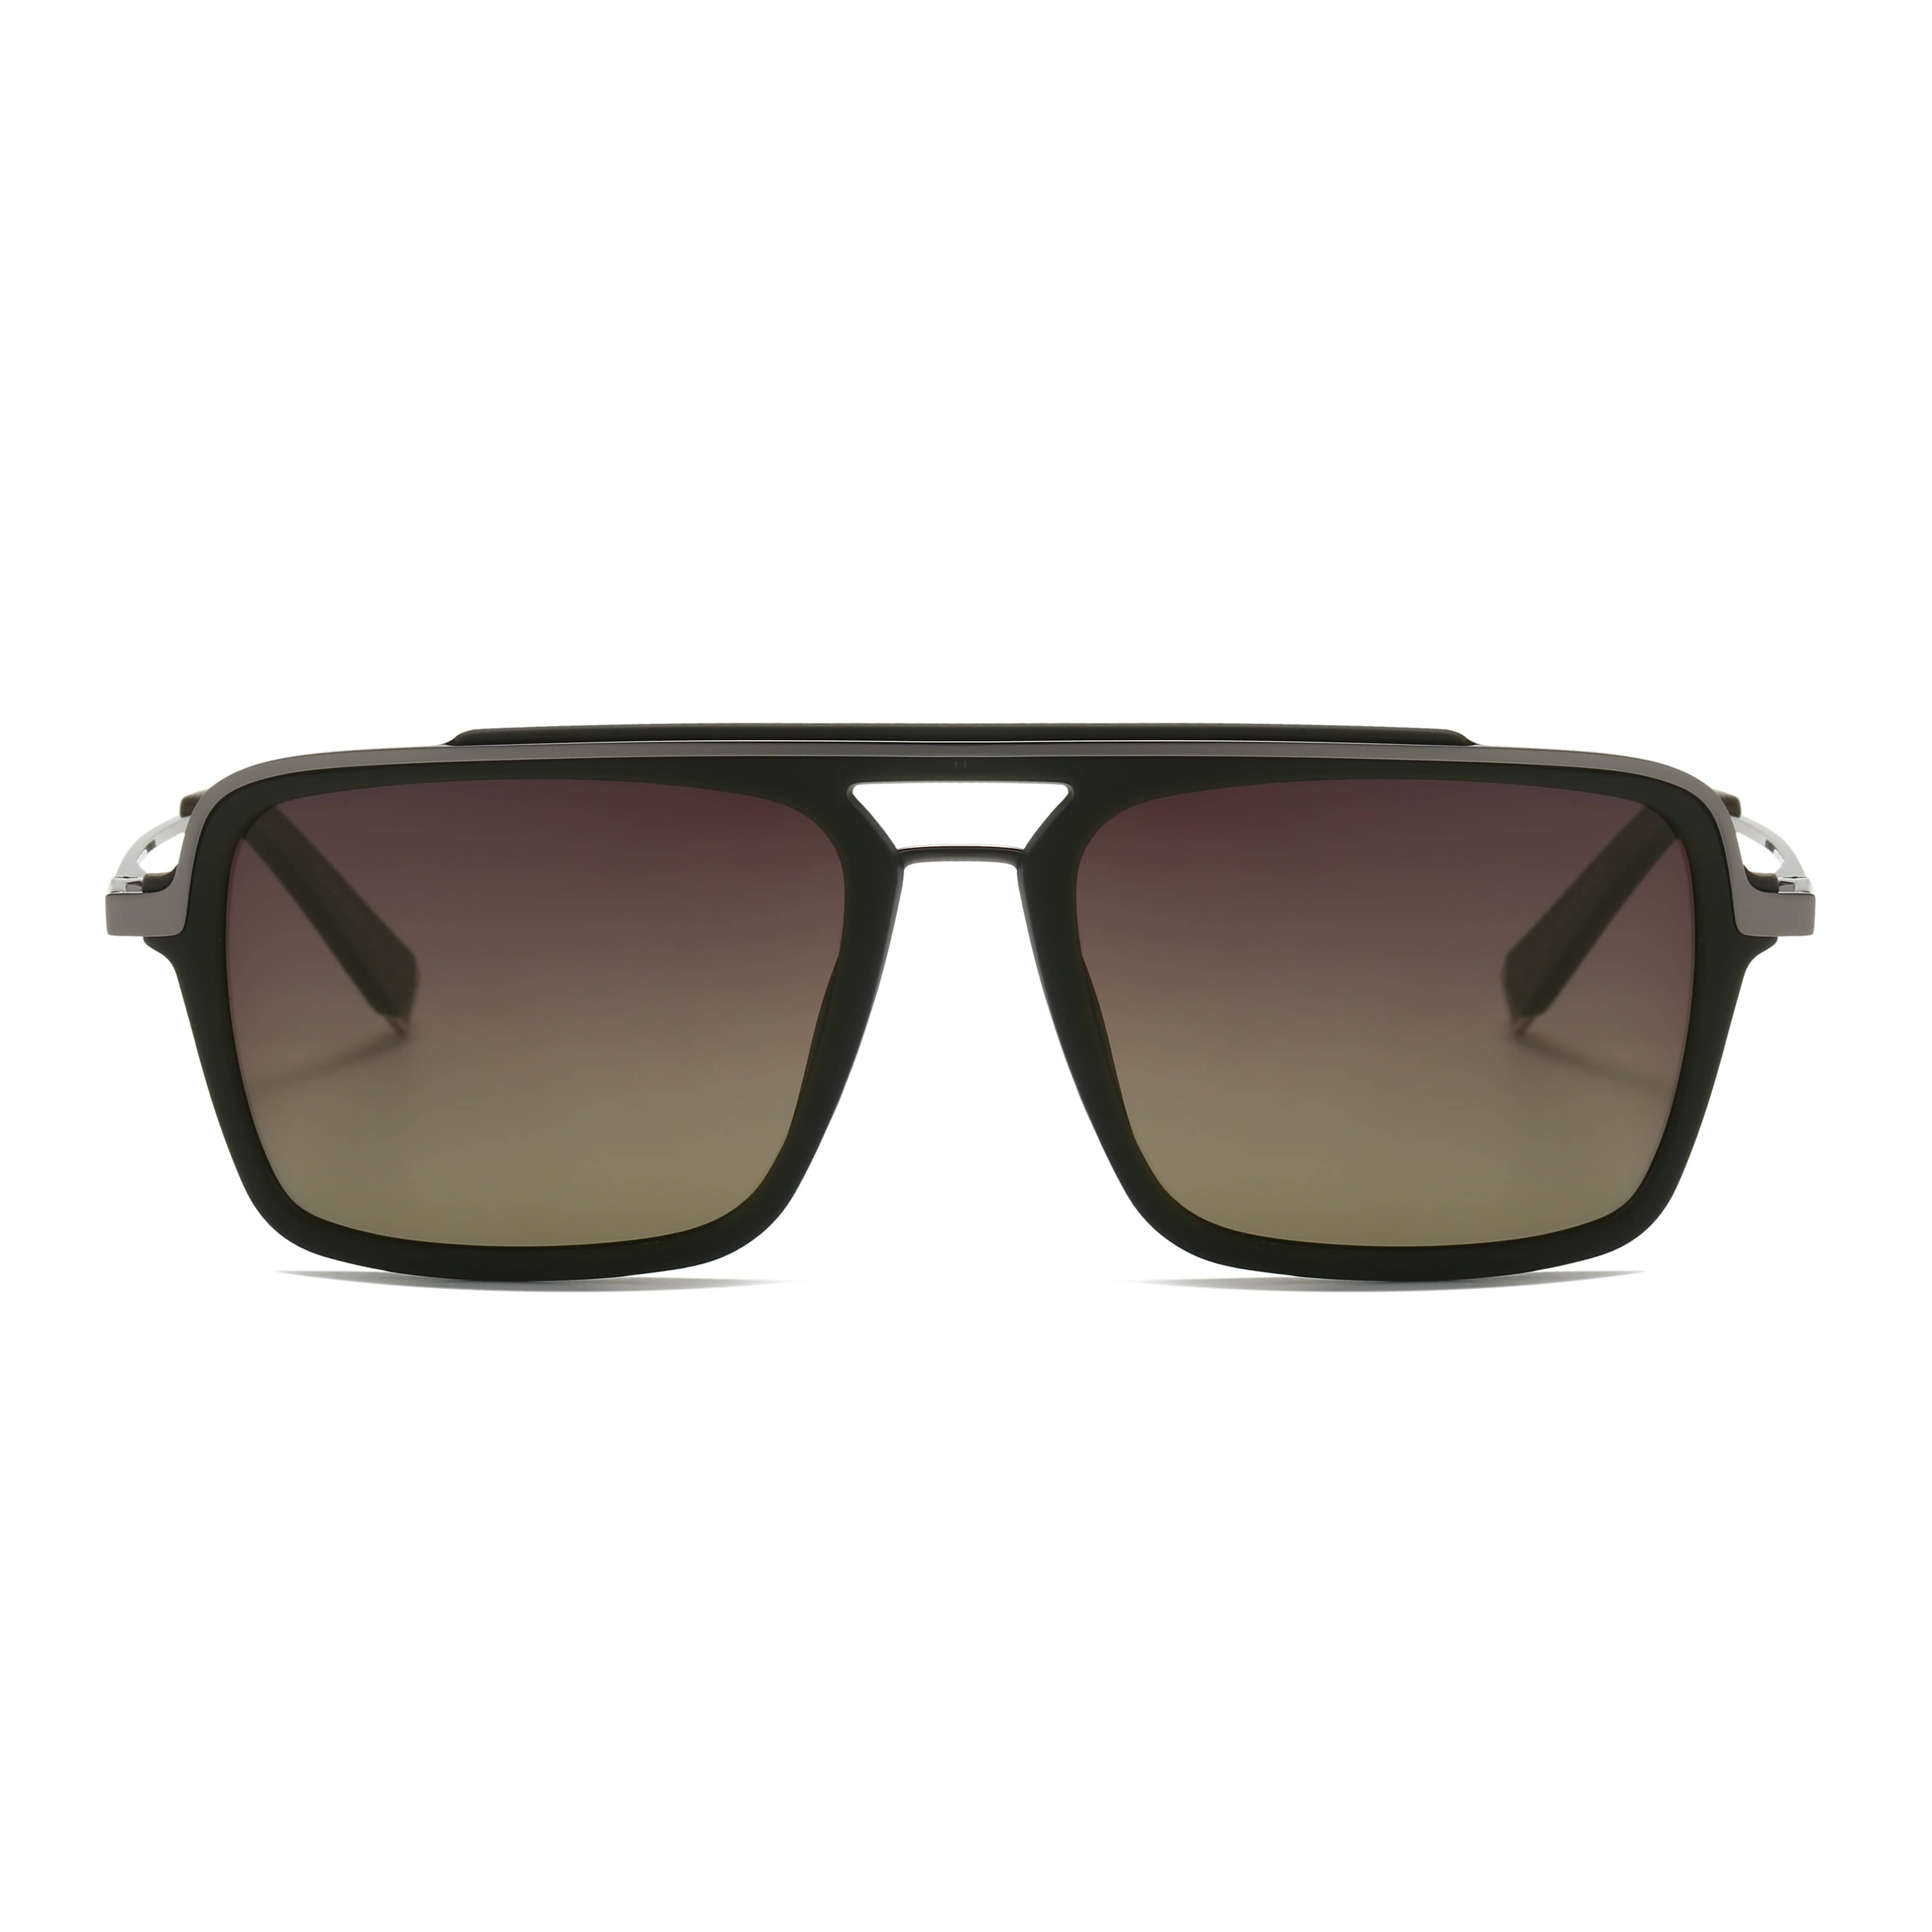 GIUSTIZIERI VECCHI Sunglasses Small / Grey Brown RadiantRay Uno